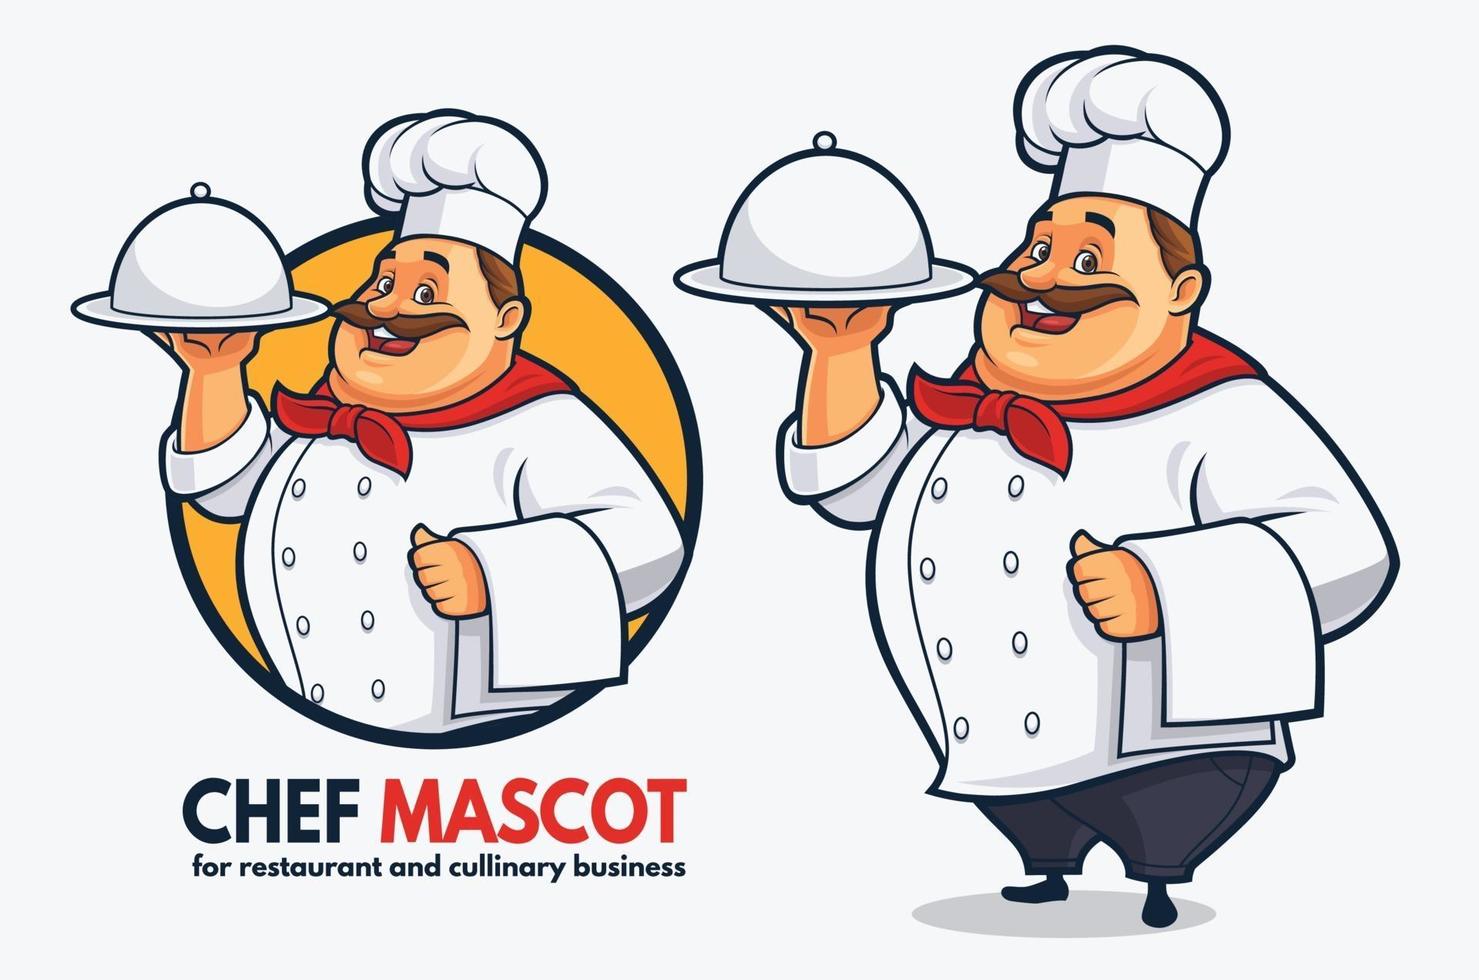 Projeto engraçado do mascote do chef para restaurante e negócios culinários, projeto do mascote do chef gordo vetor